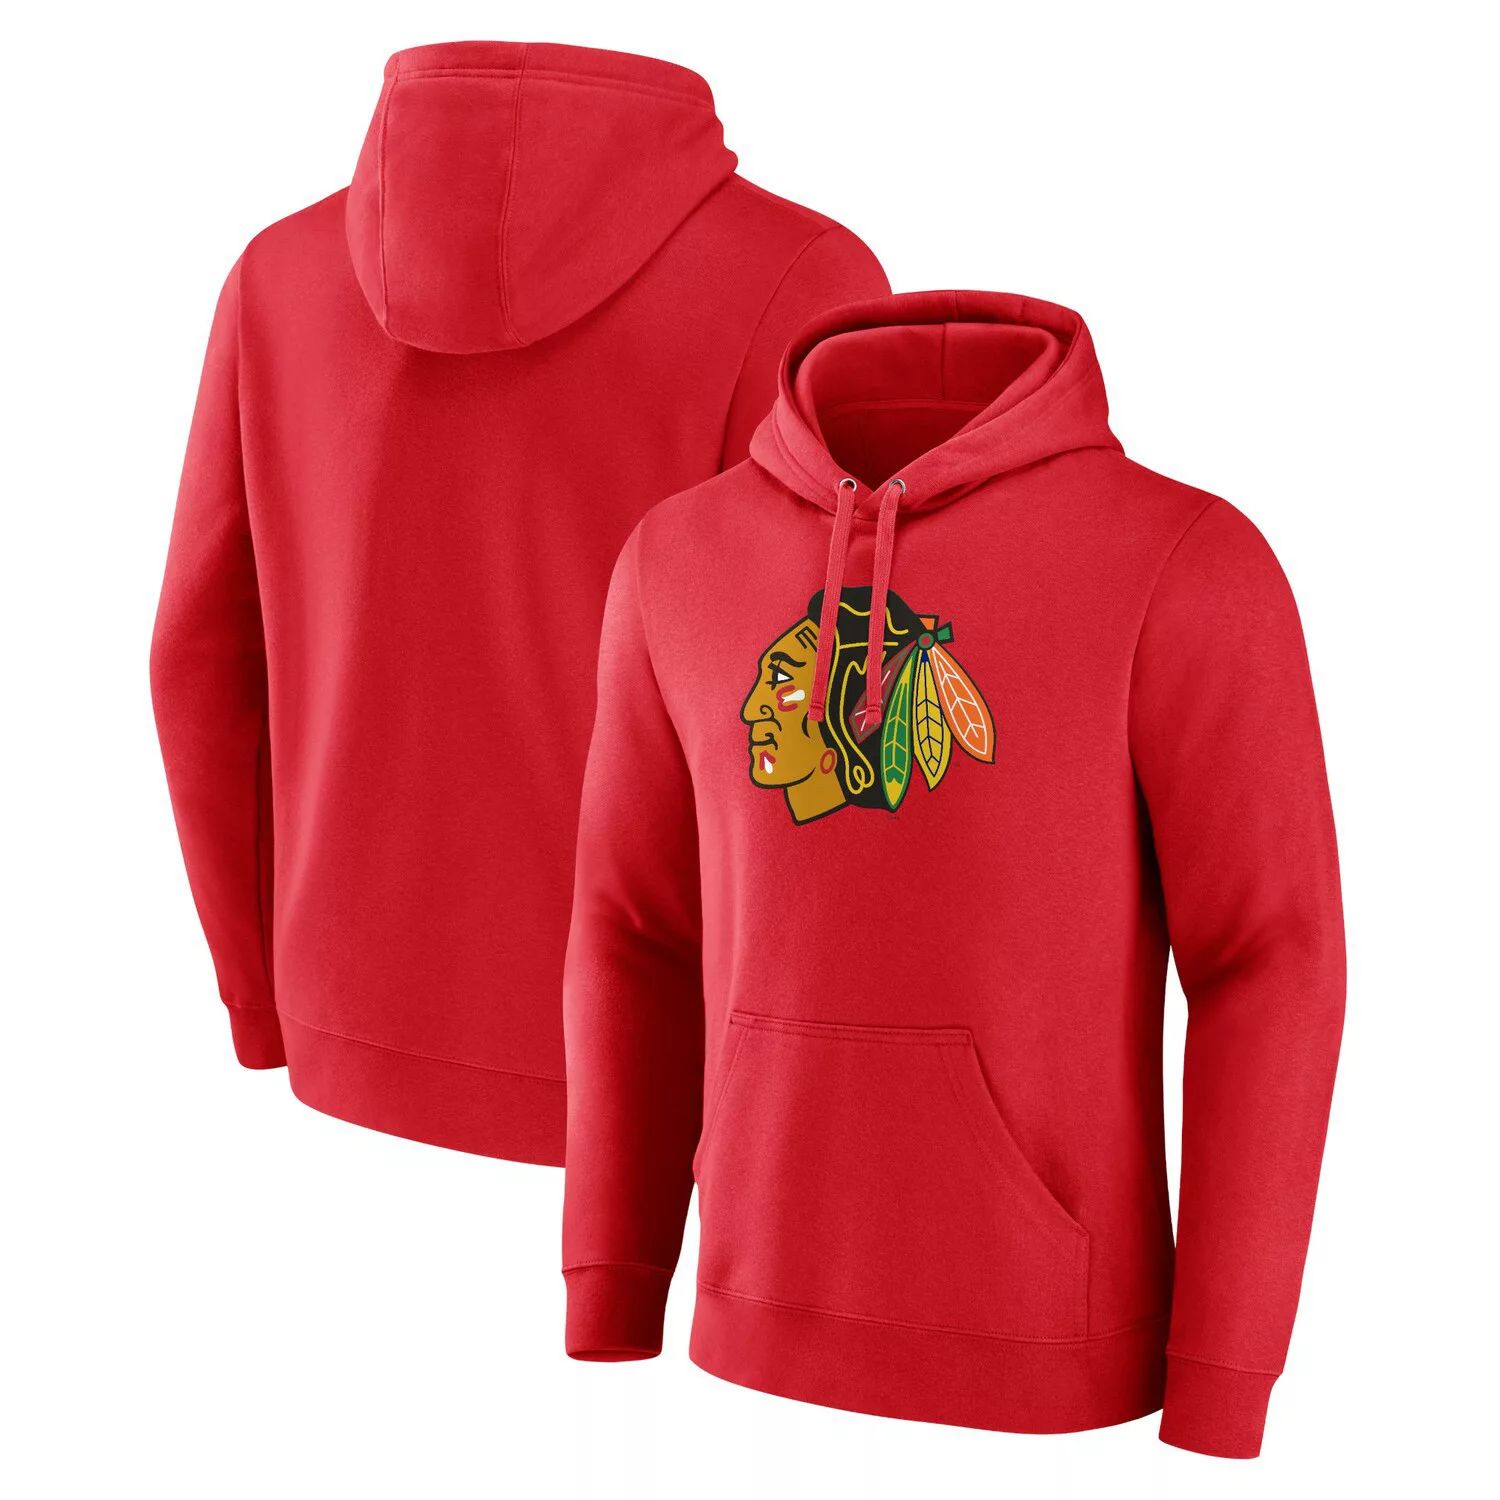 Мужской красный пуловер с капюшоном и логотипом Fanatics Chicago Blackhawks